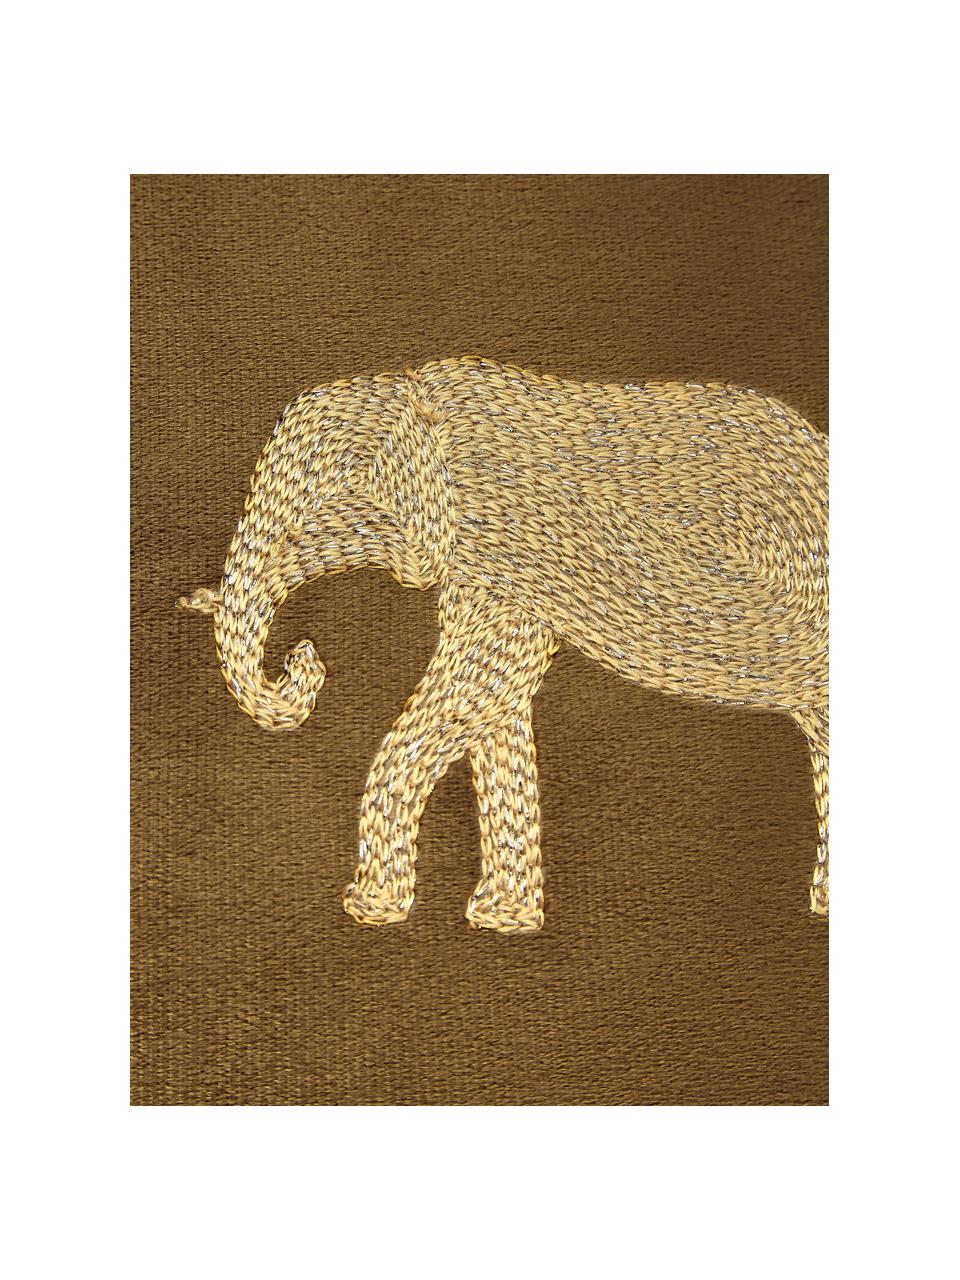 Cuscino in velluto ricamato effetto lucido Elephant, 100% velluto (poliestere), Marrone, dorato, Larg. 45 x Lung. 45 cm